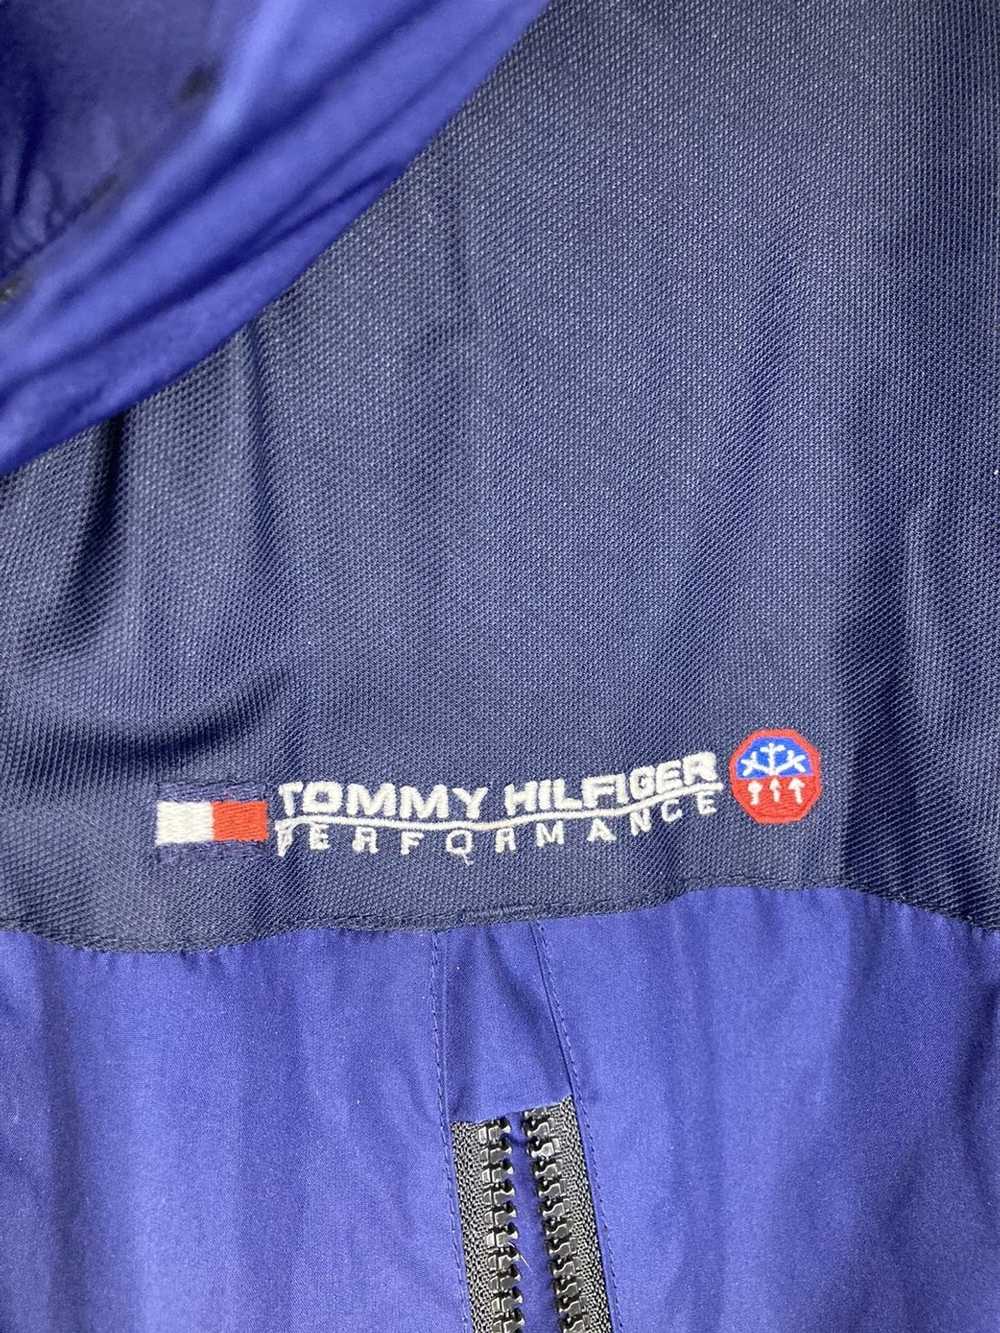 Tommy Hilfiger Tommy Hilfiger ColdStop Performanc… - image 2